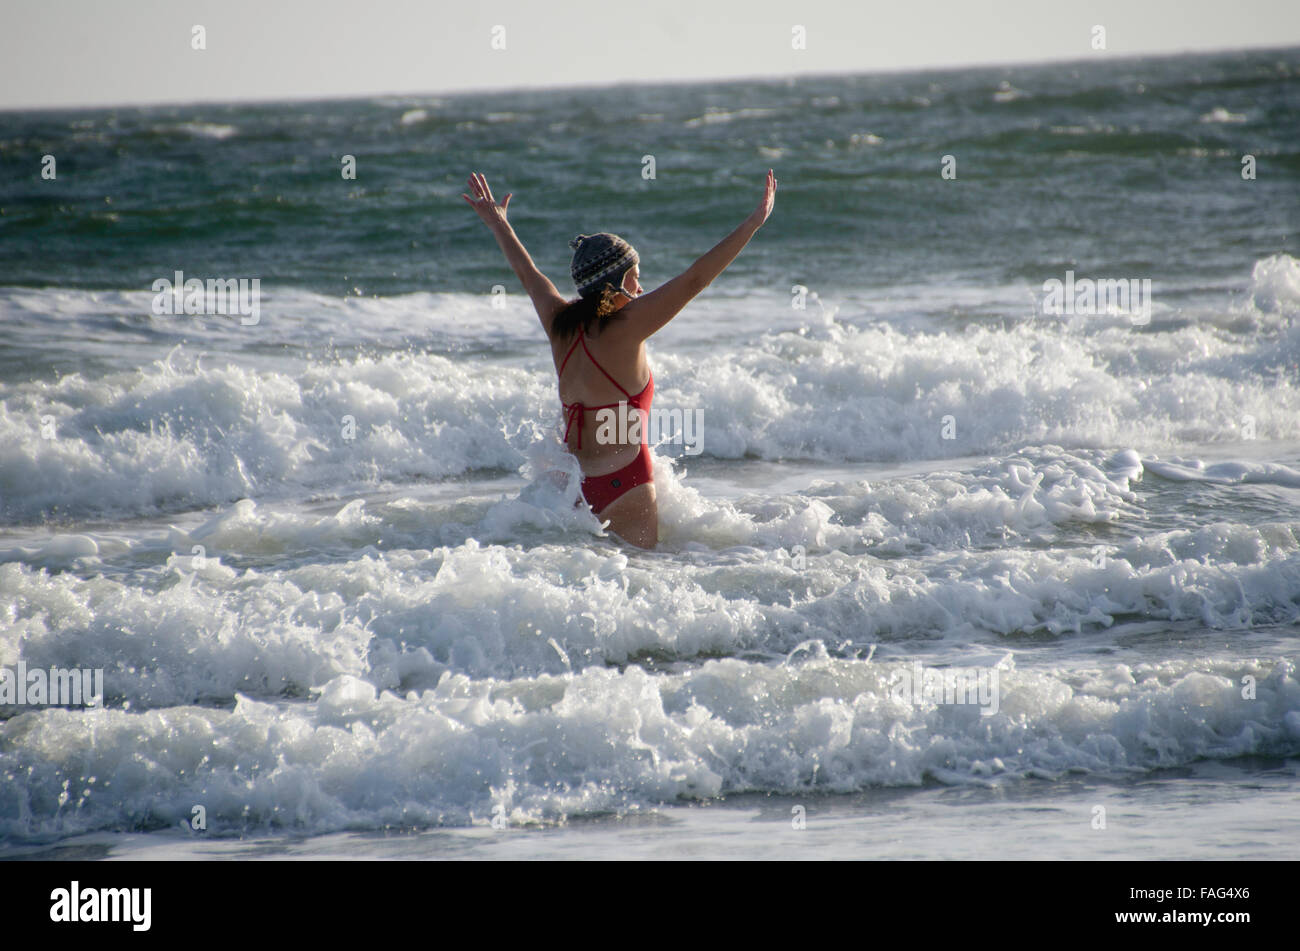 Nuoto invernale immagini e fotografie stock ad alta risoluzione - Alamy